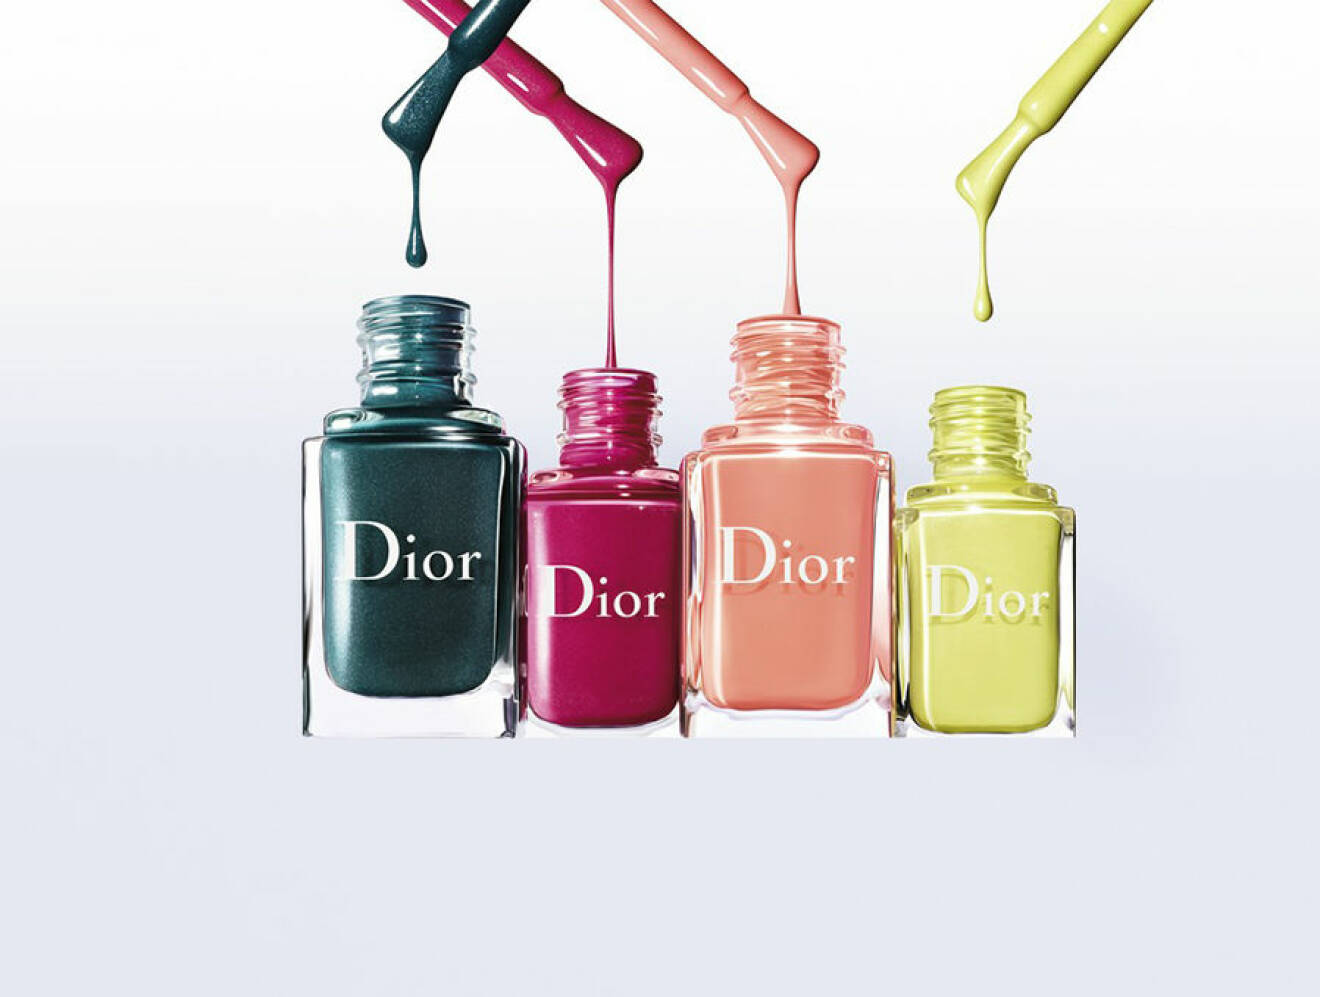 spring-look-dior-nail-polish-all-shades